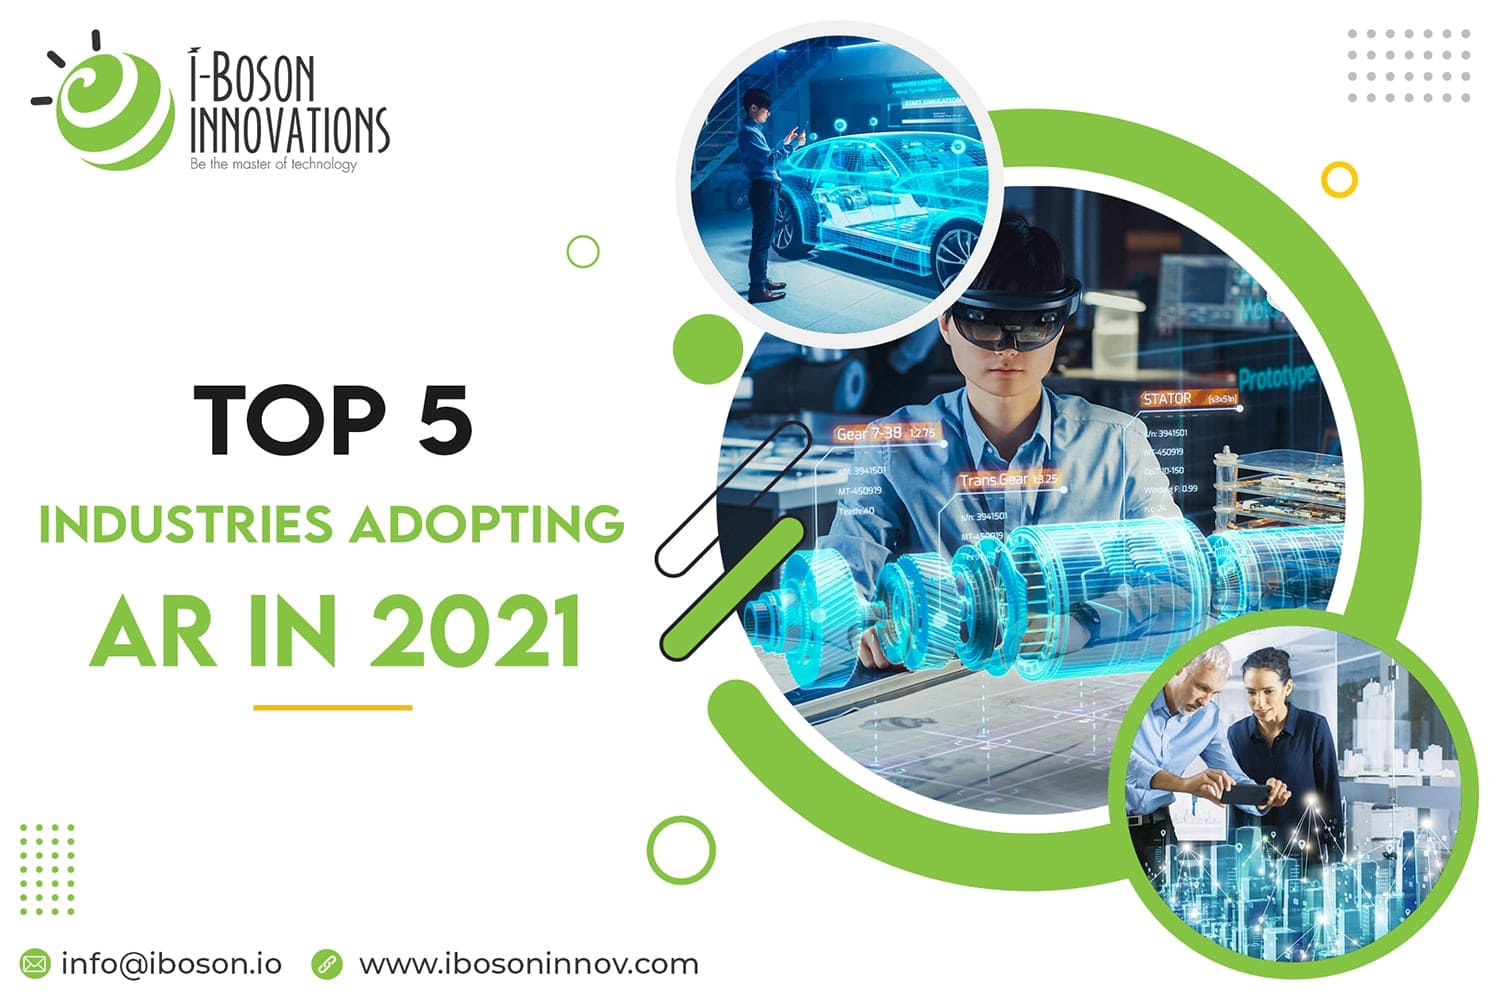 Top industries adopting AR in 2021